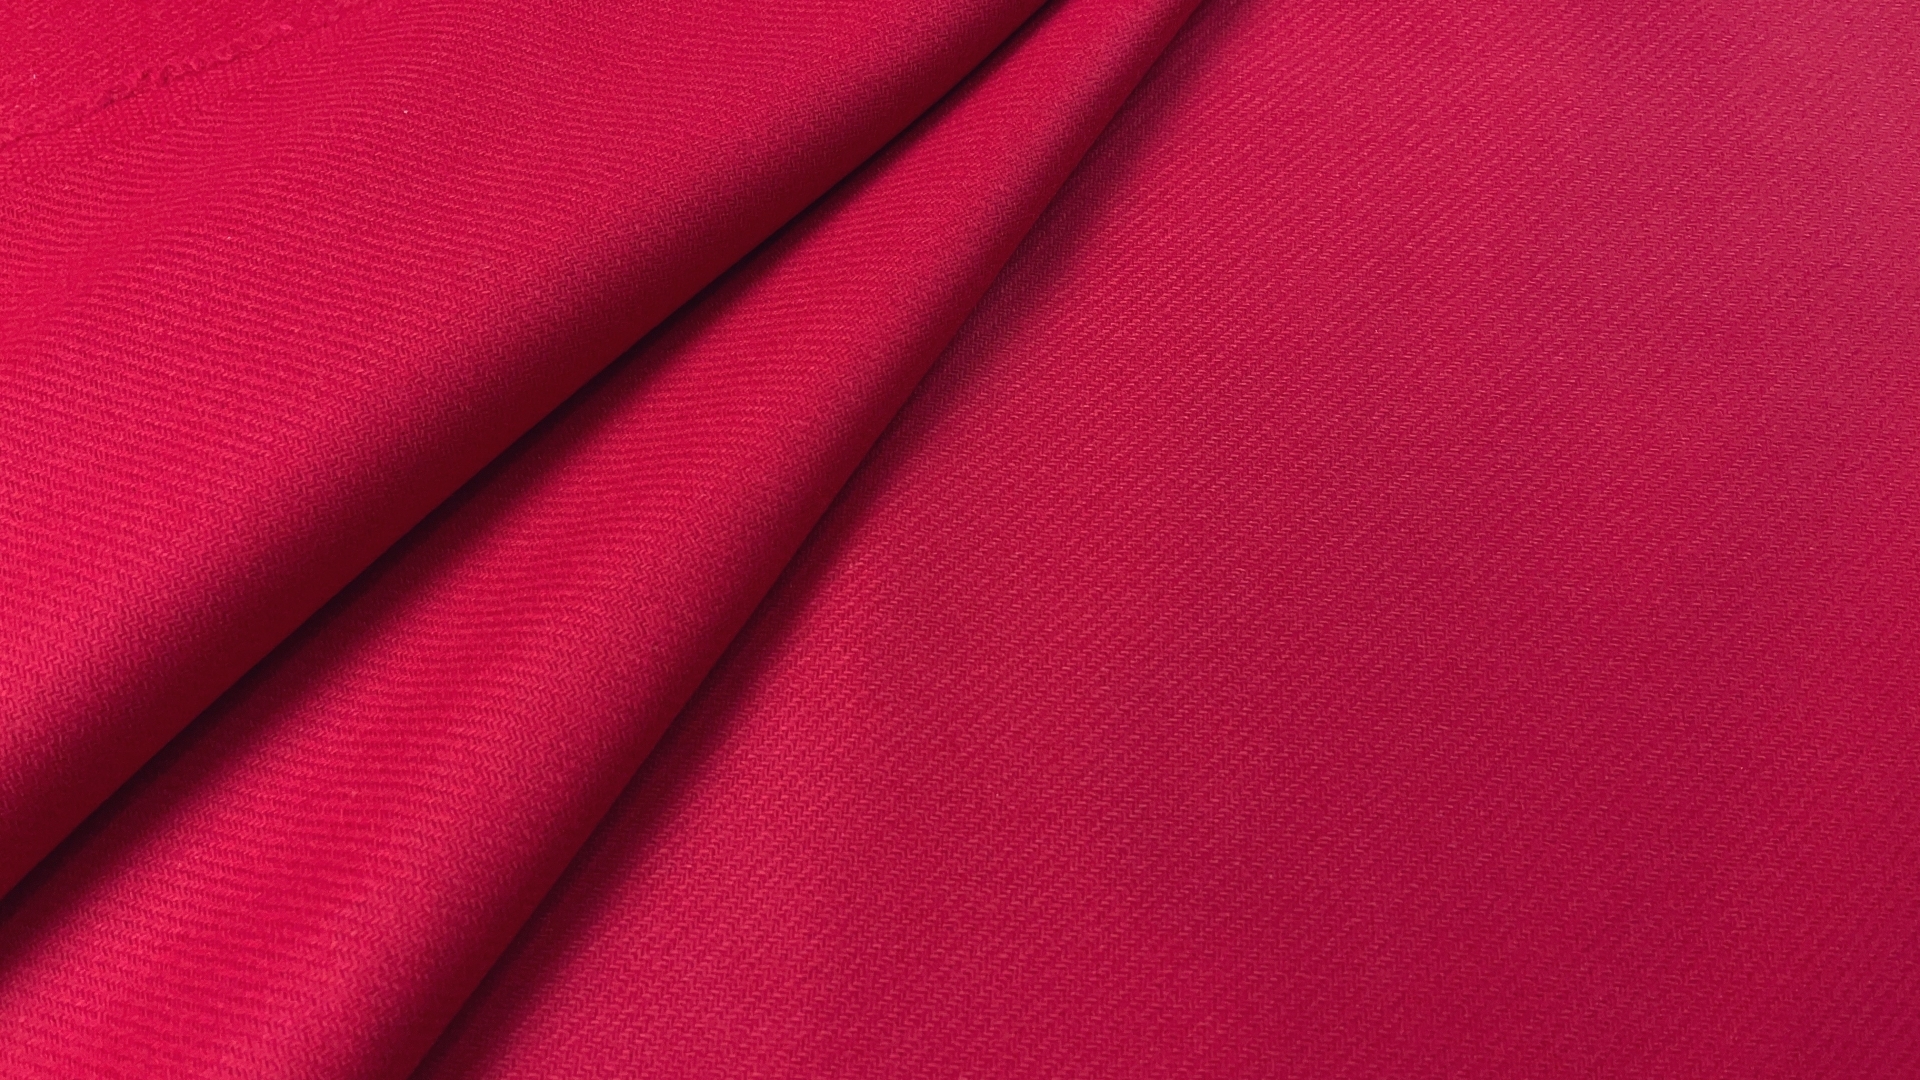 Пальтовая малиново-кораллового цвета с розовой каплей с диагональной выработкой из коллекционного стока. Полотно двойное, поэтому изделие можно шить по технологии швом внутрь. Плотность 600 гр м/п, для весеннего пальто прямого силуэта или оверсайз.